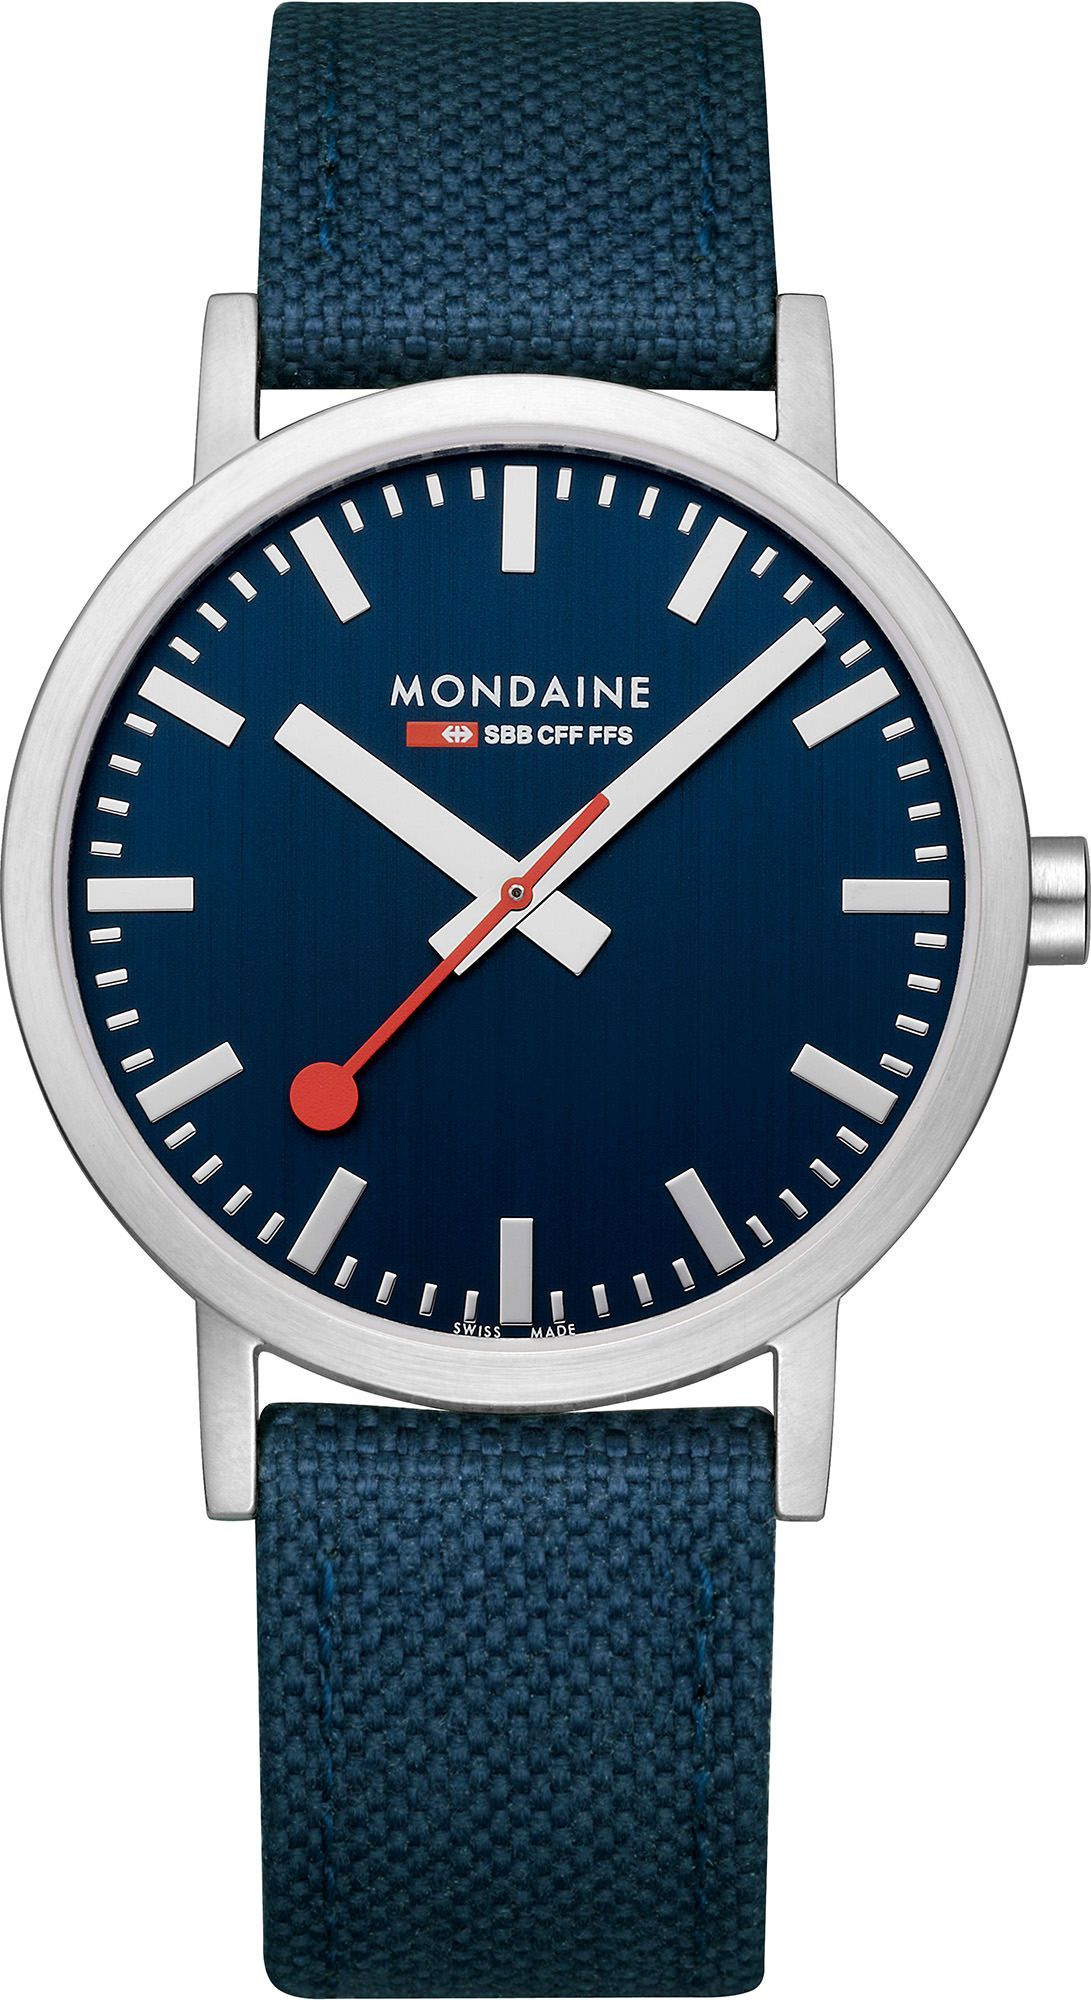 Mondaine Classic  Blue Dial 40 mm Quartz Watch For Unisex - 1